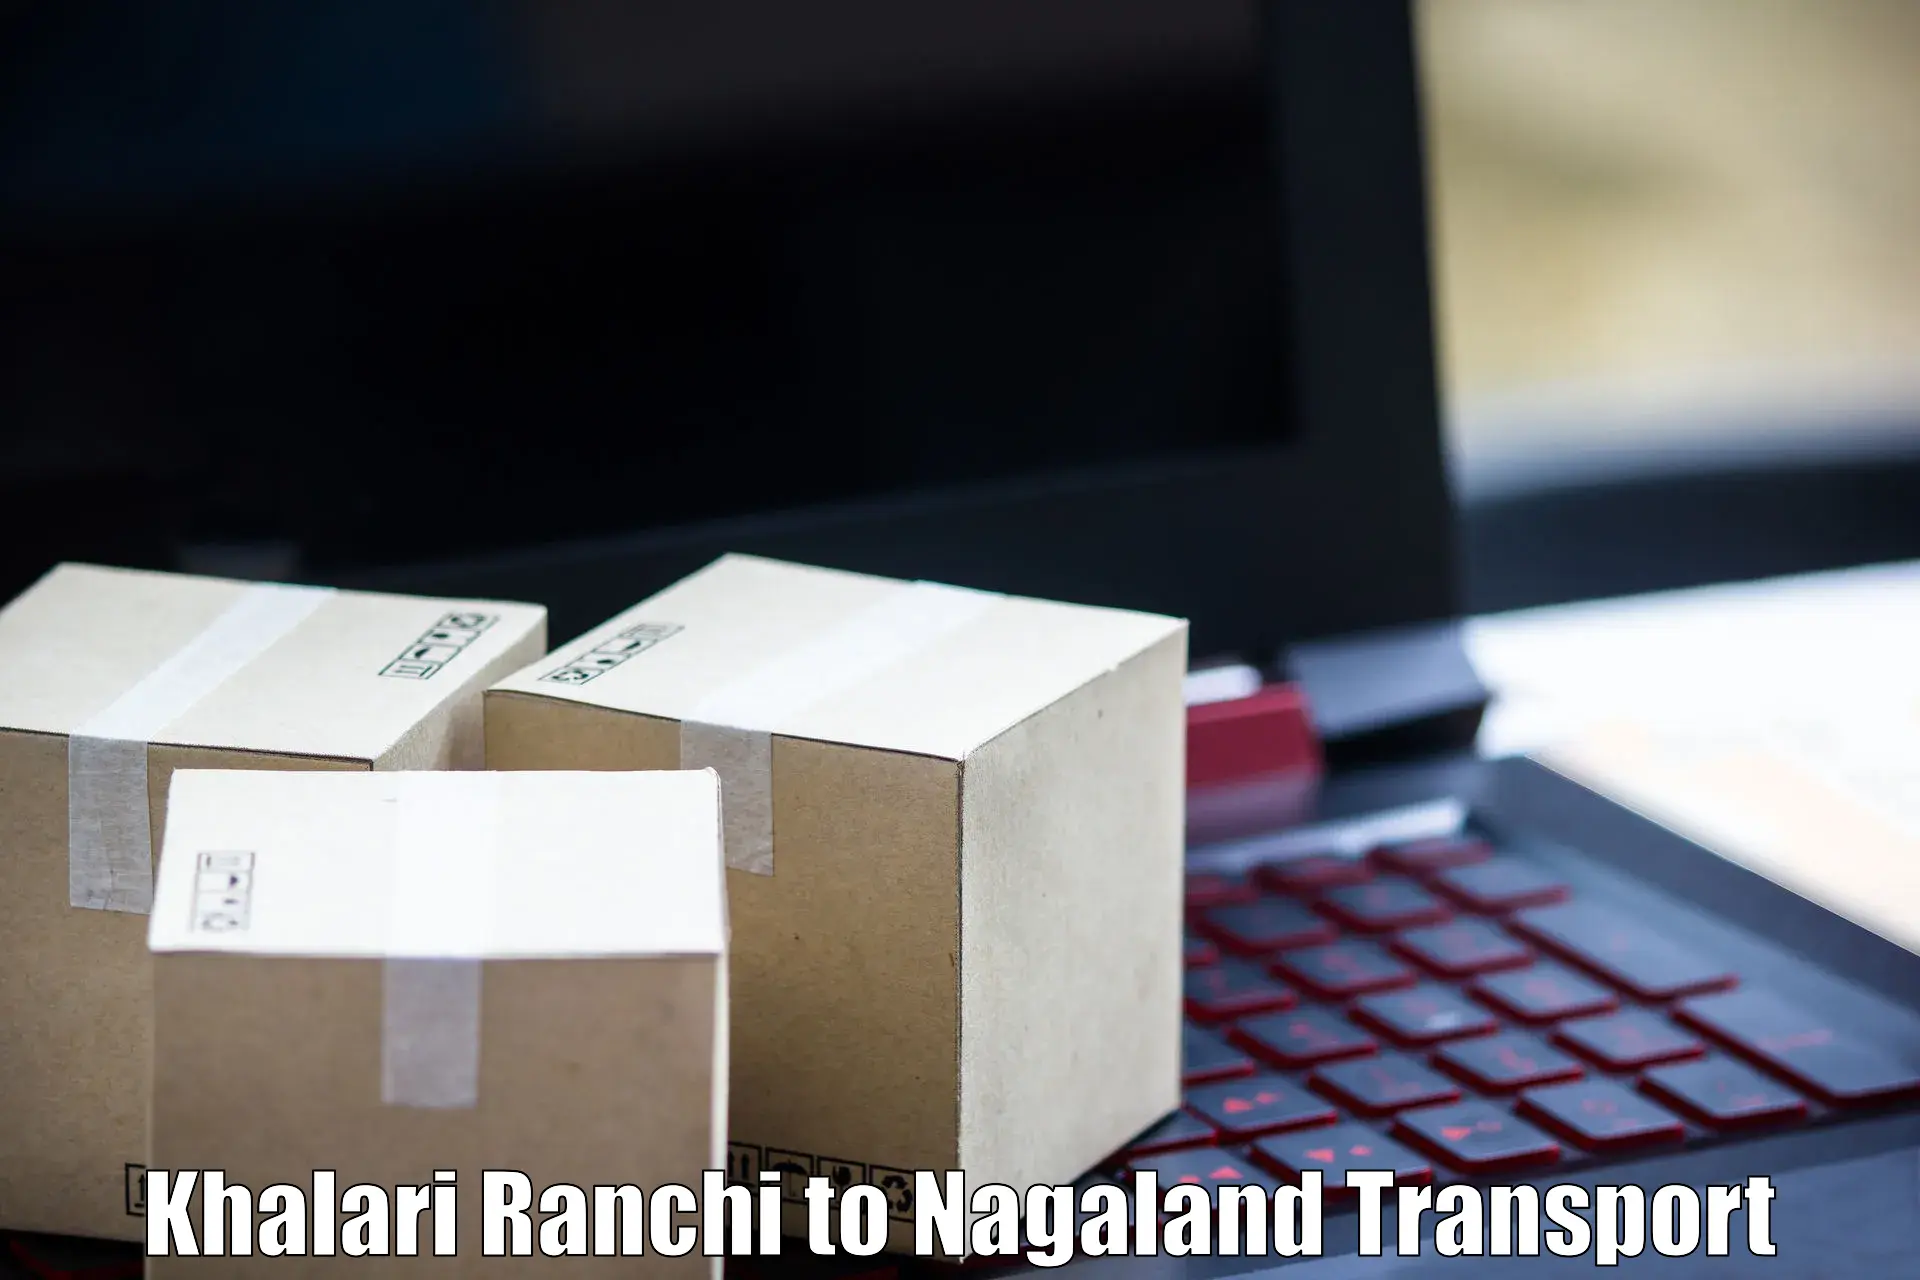 Material transport services Khalari Ranchi to NIT Nagaland